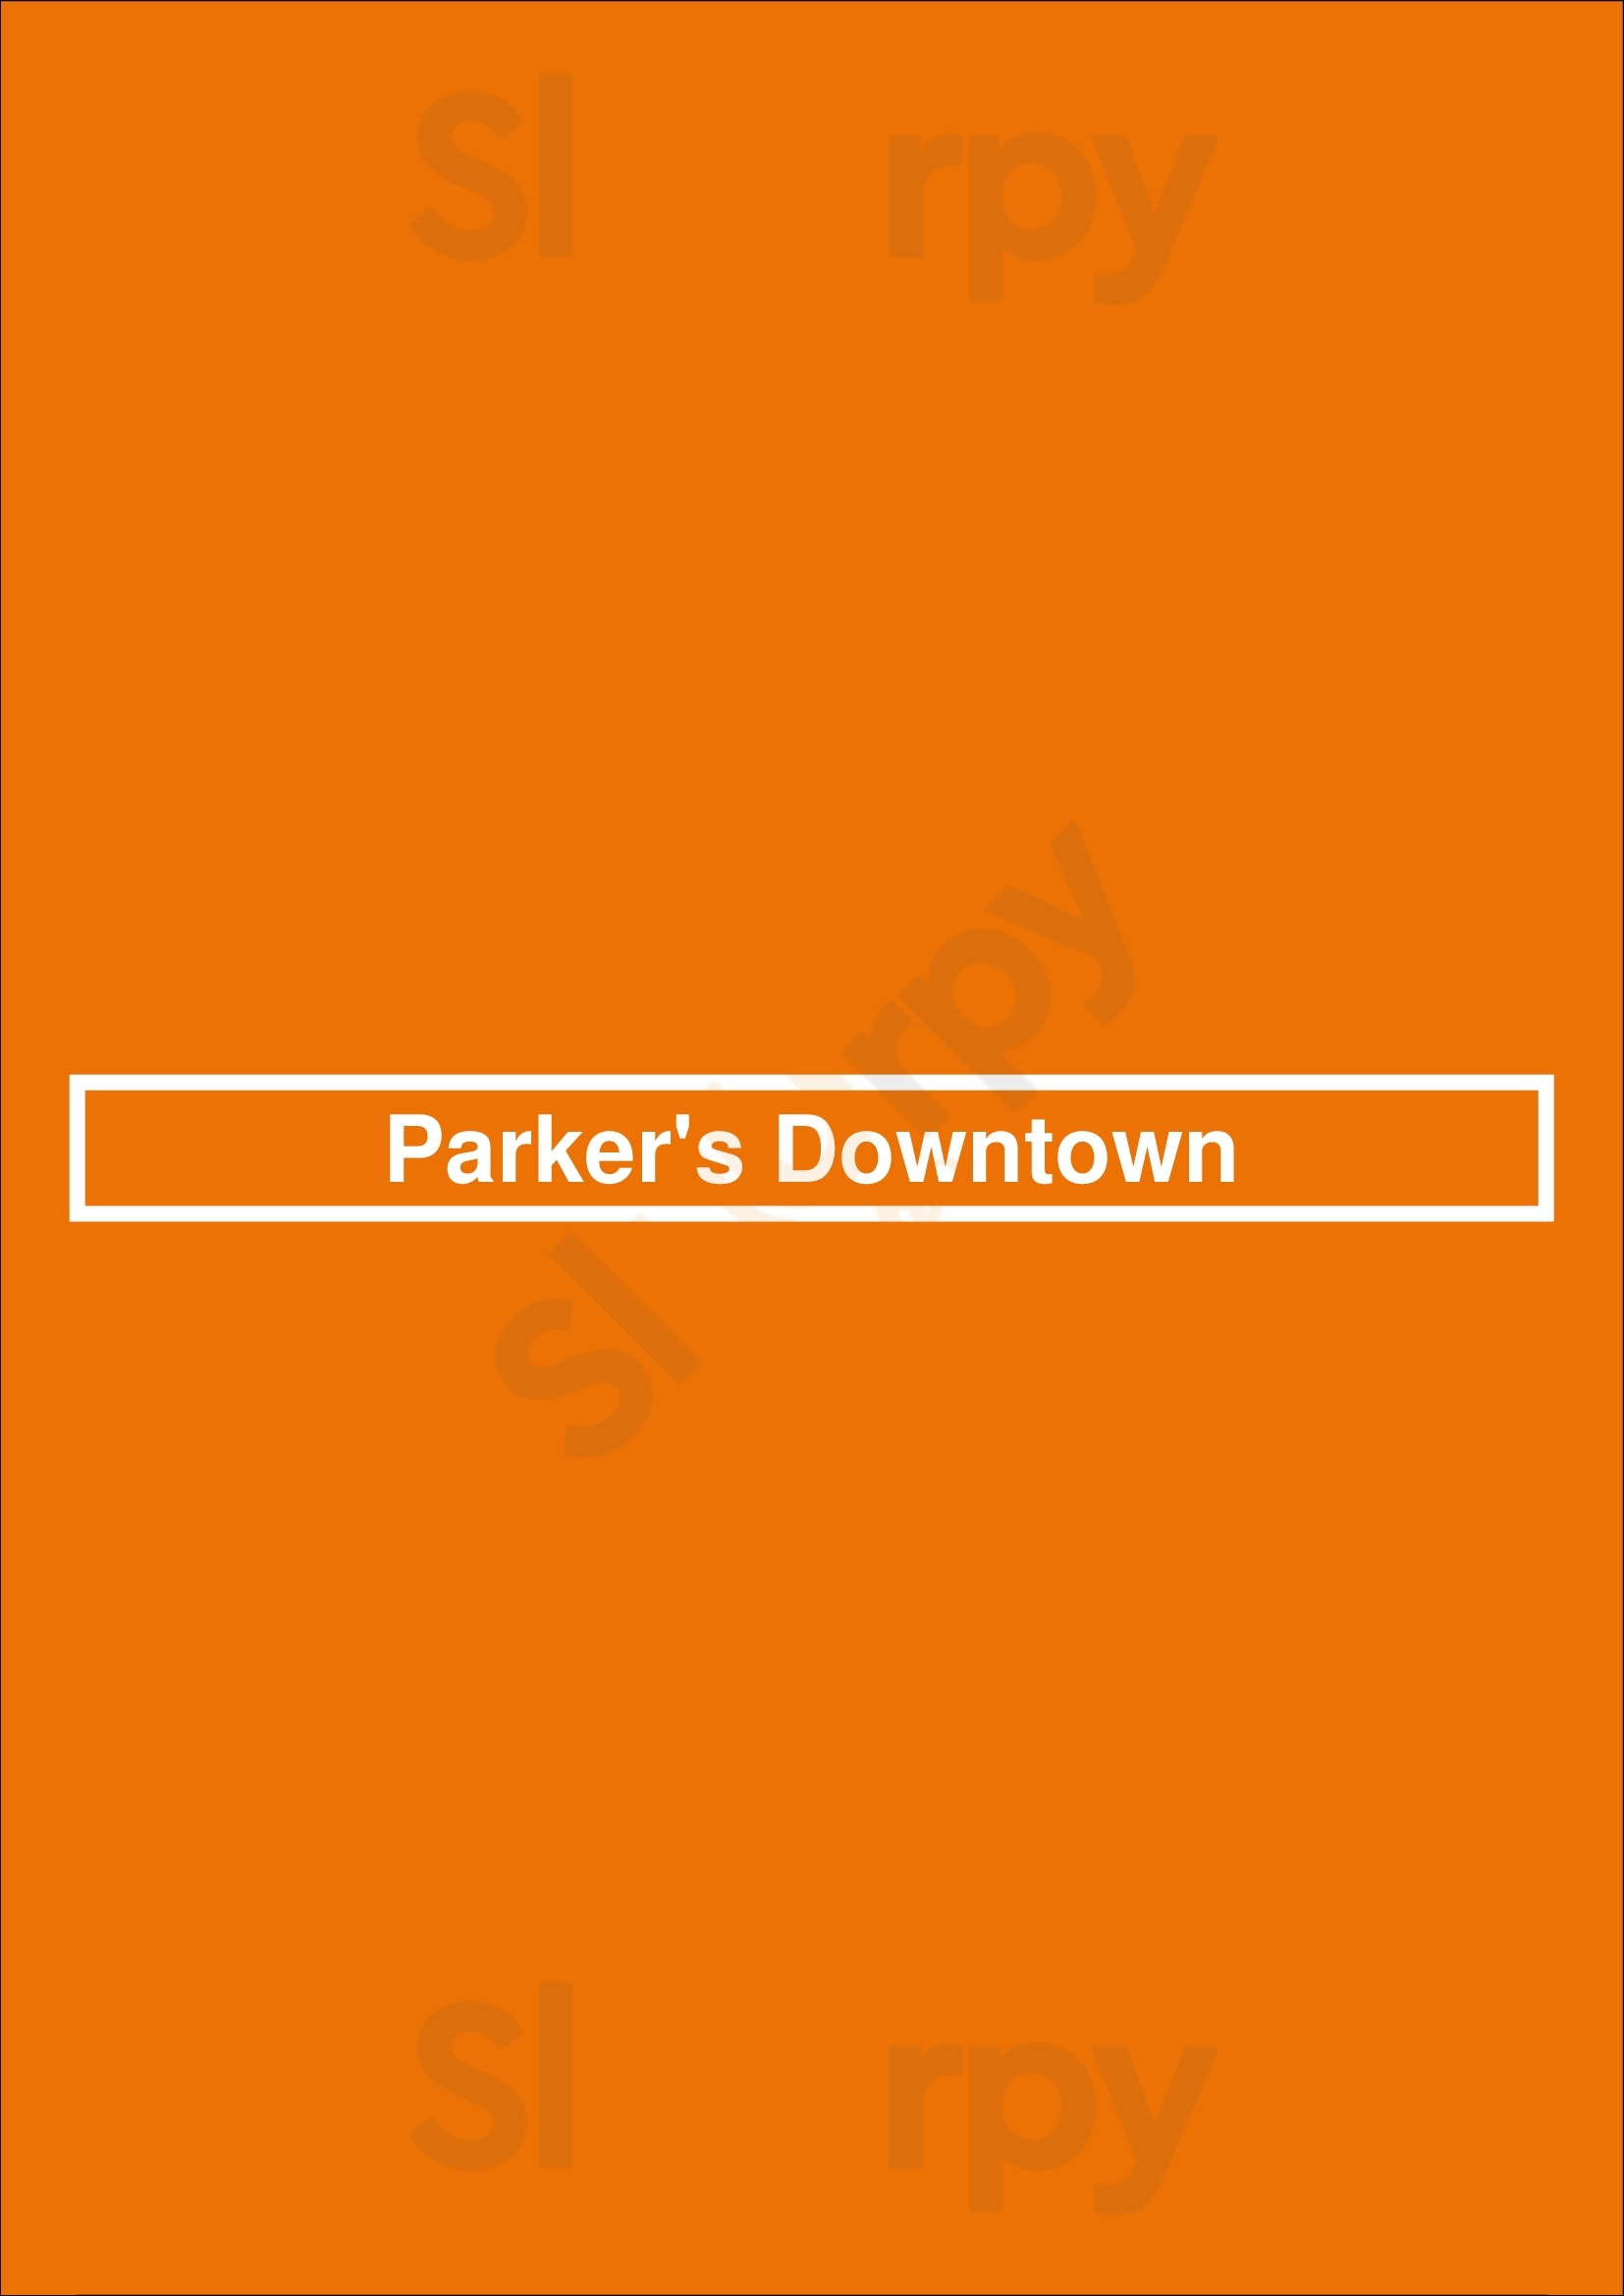 Parker's Downtown Cleveland Menu - 1